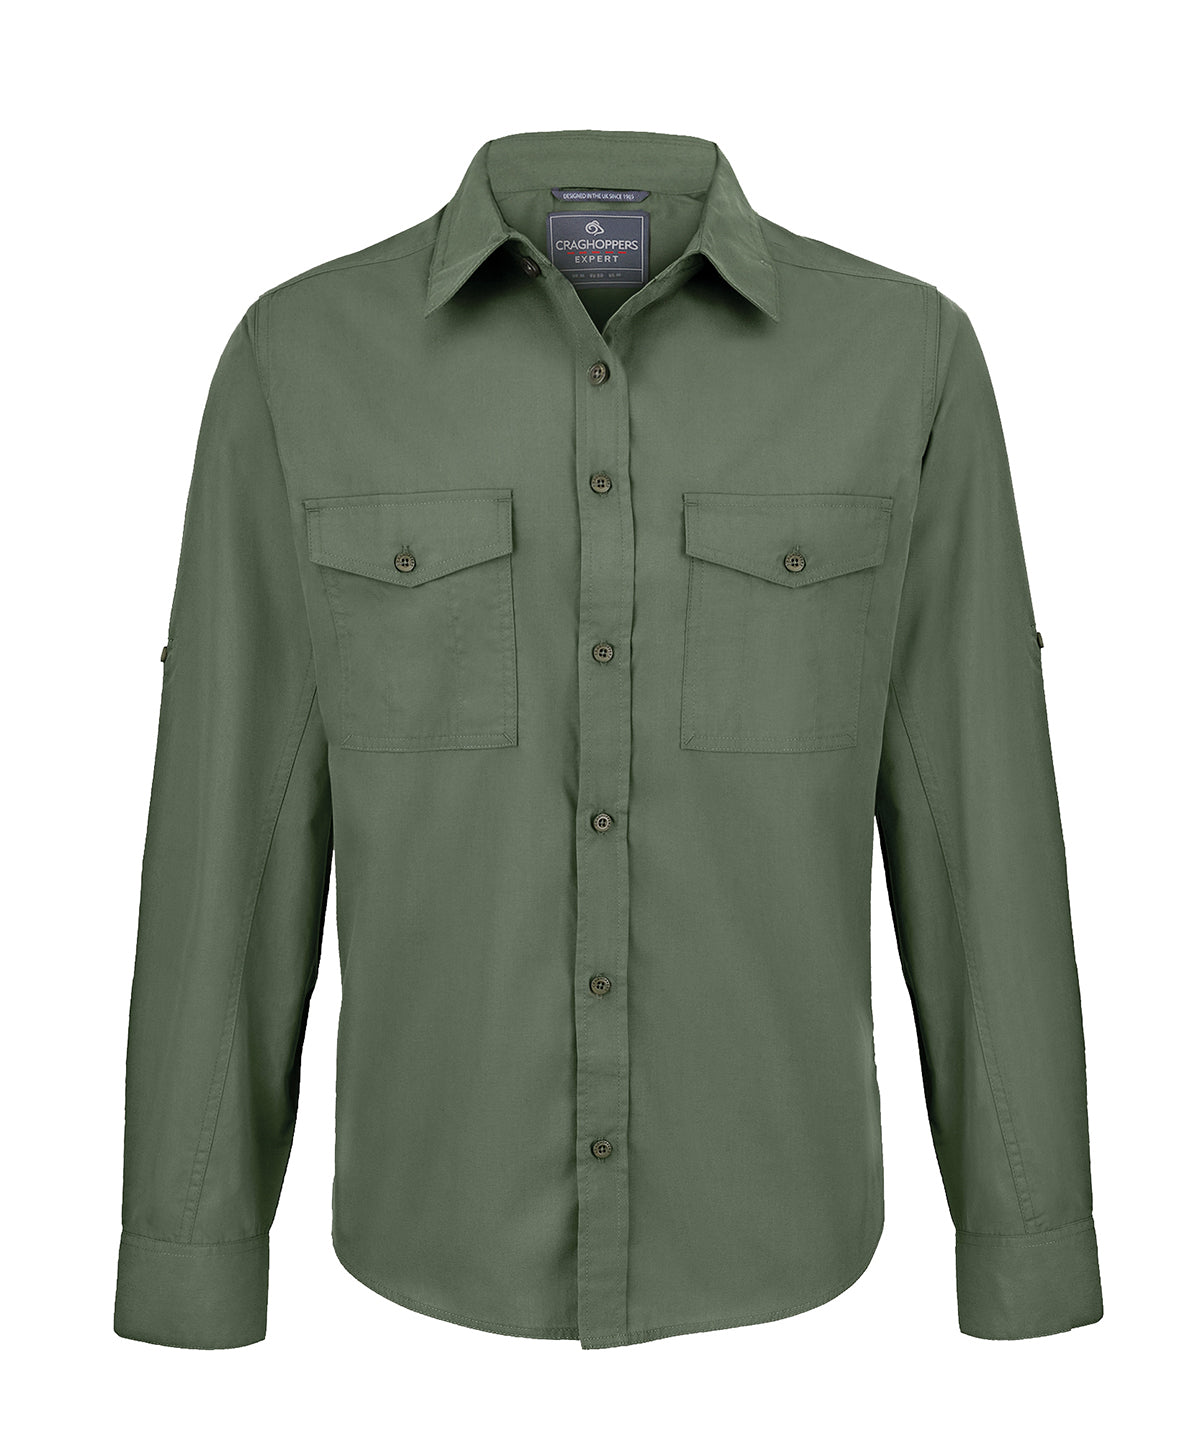 Bolir - Expert Kiwi Long-sleeved Shirt